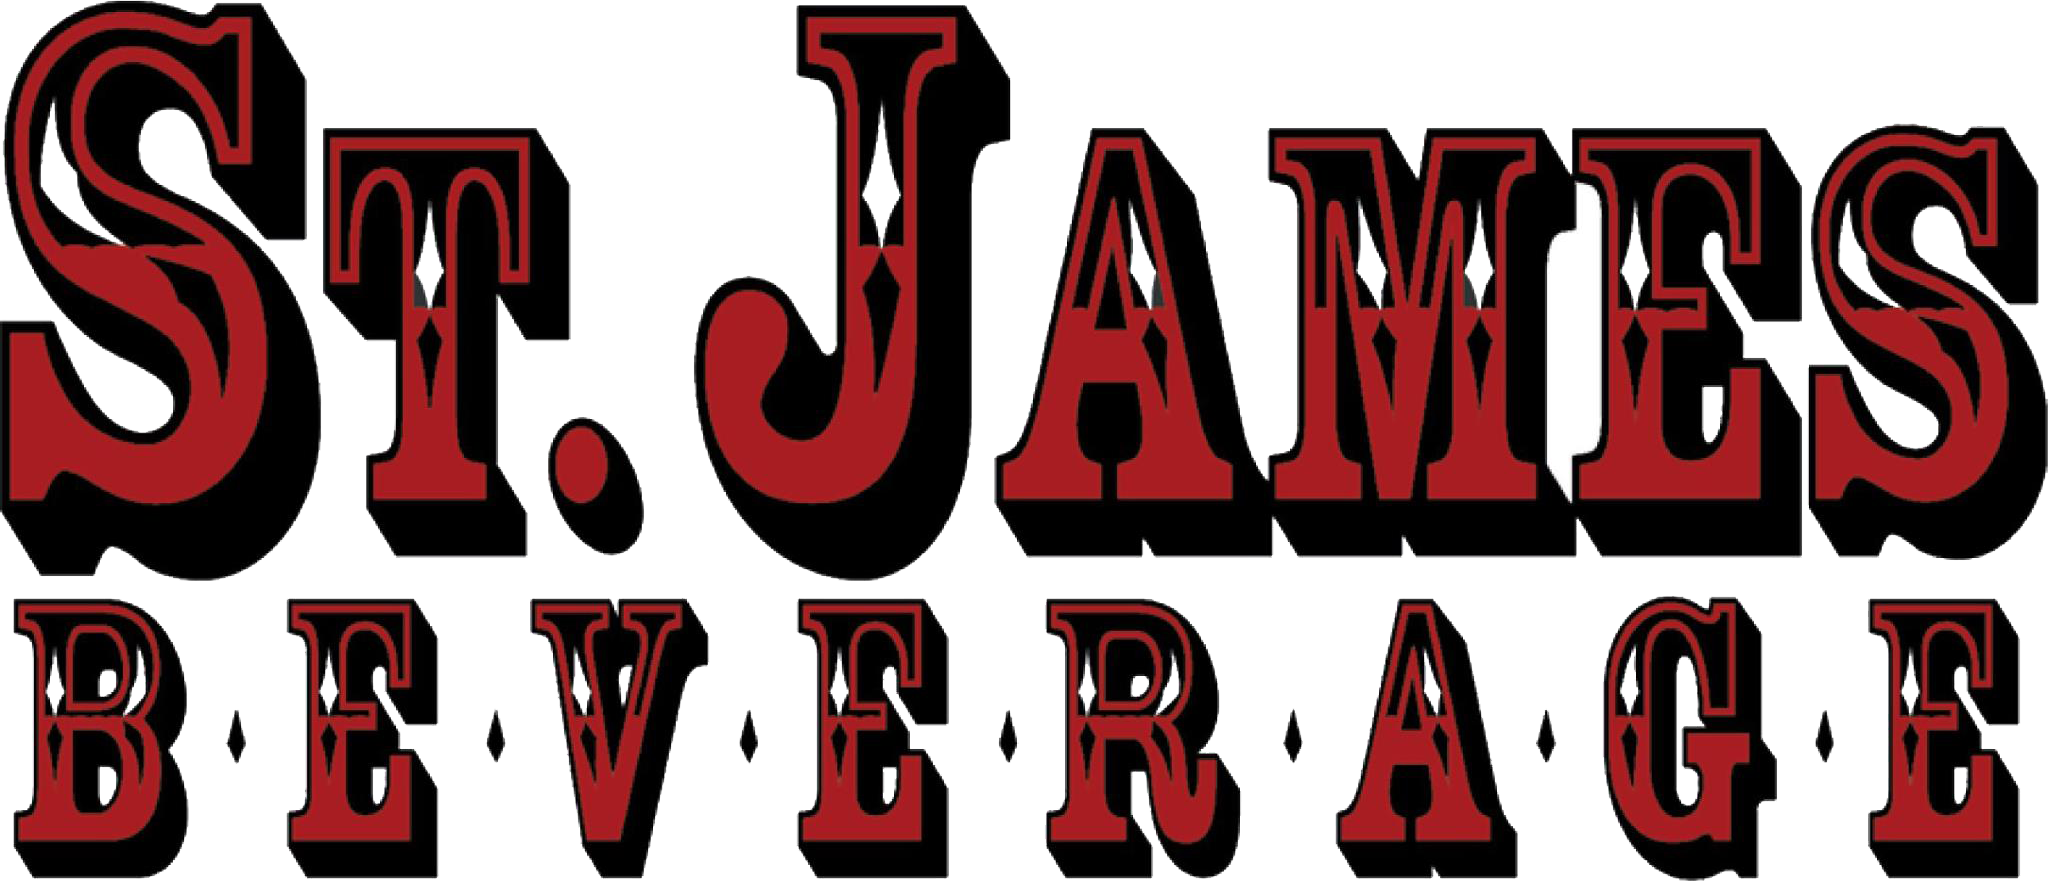 St James Beverage Logo